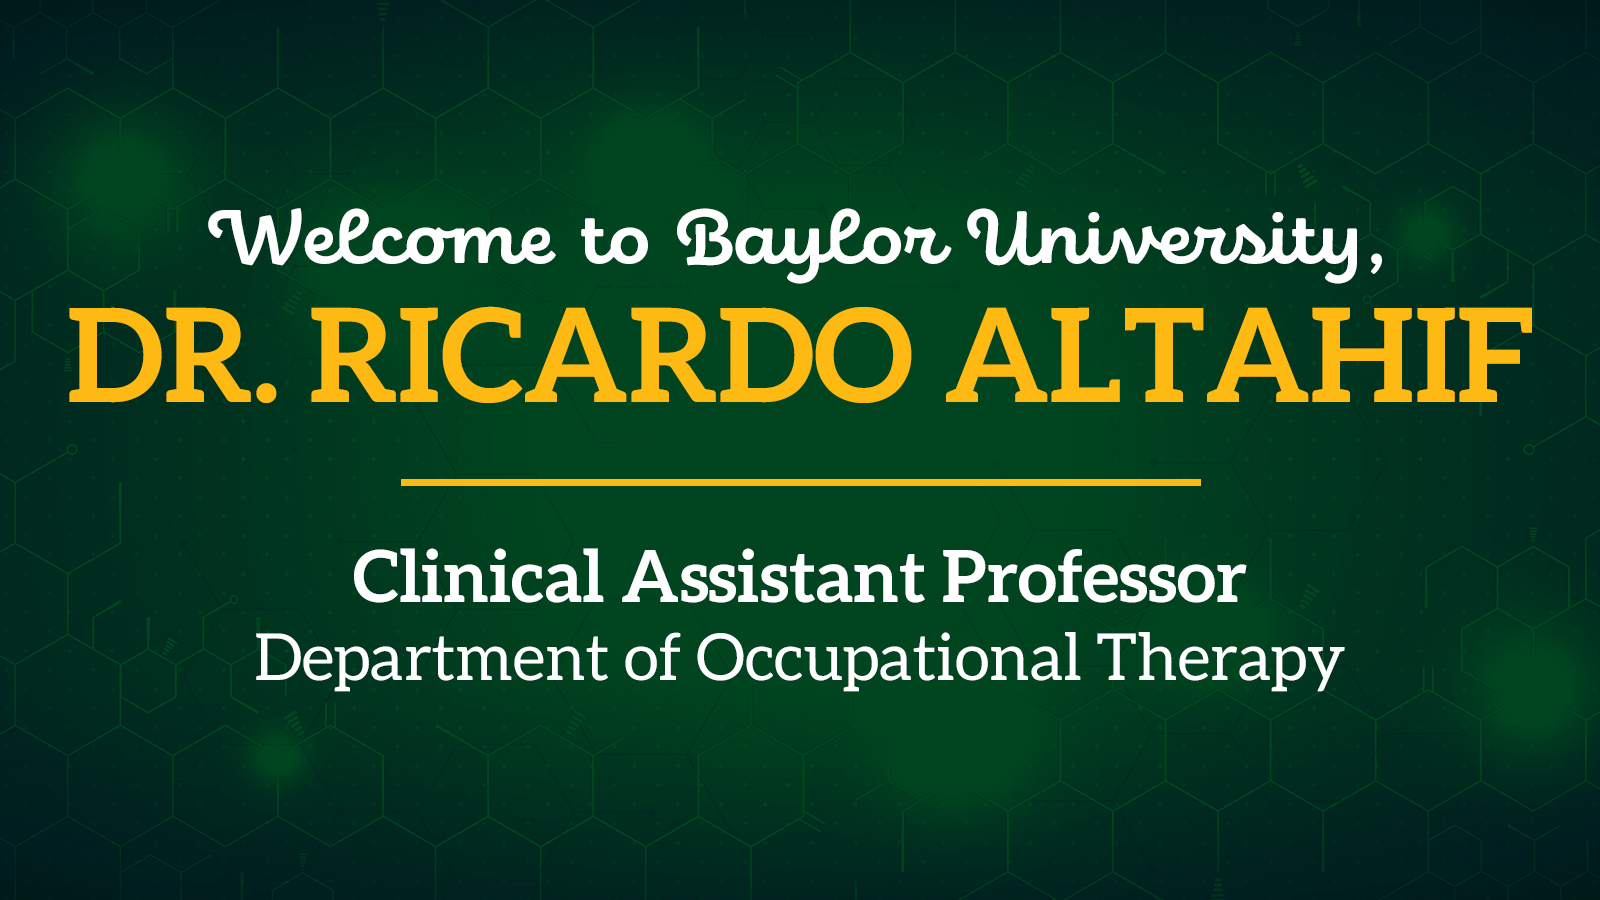 Welcome Dr. Ricardo Altahif